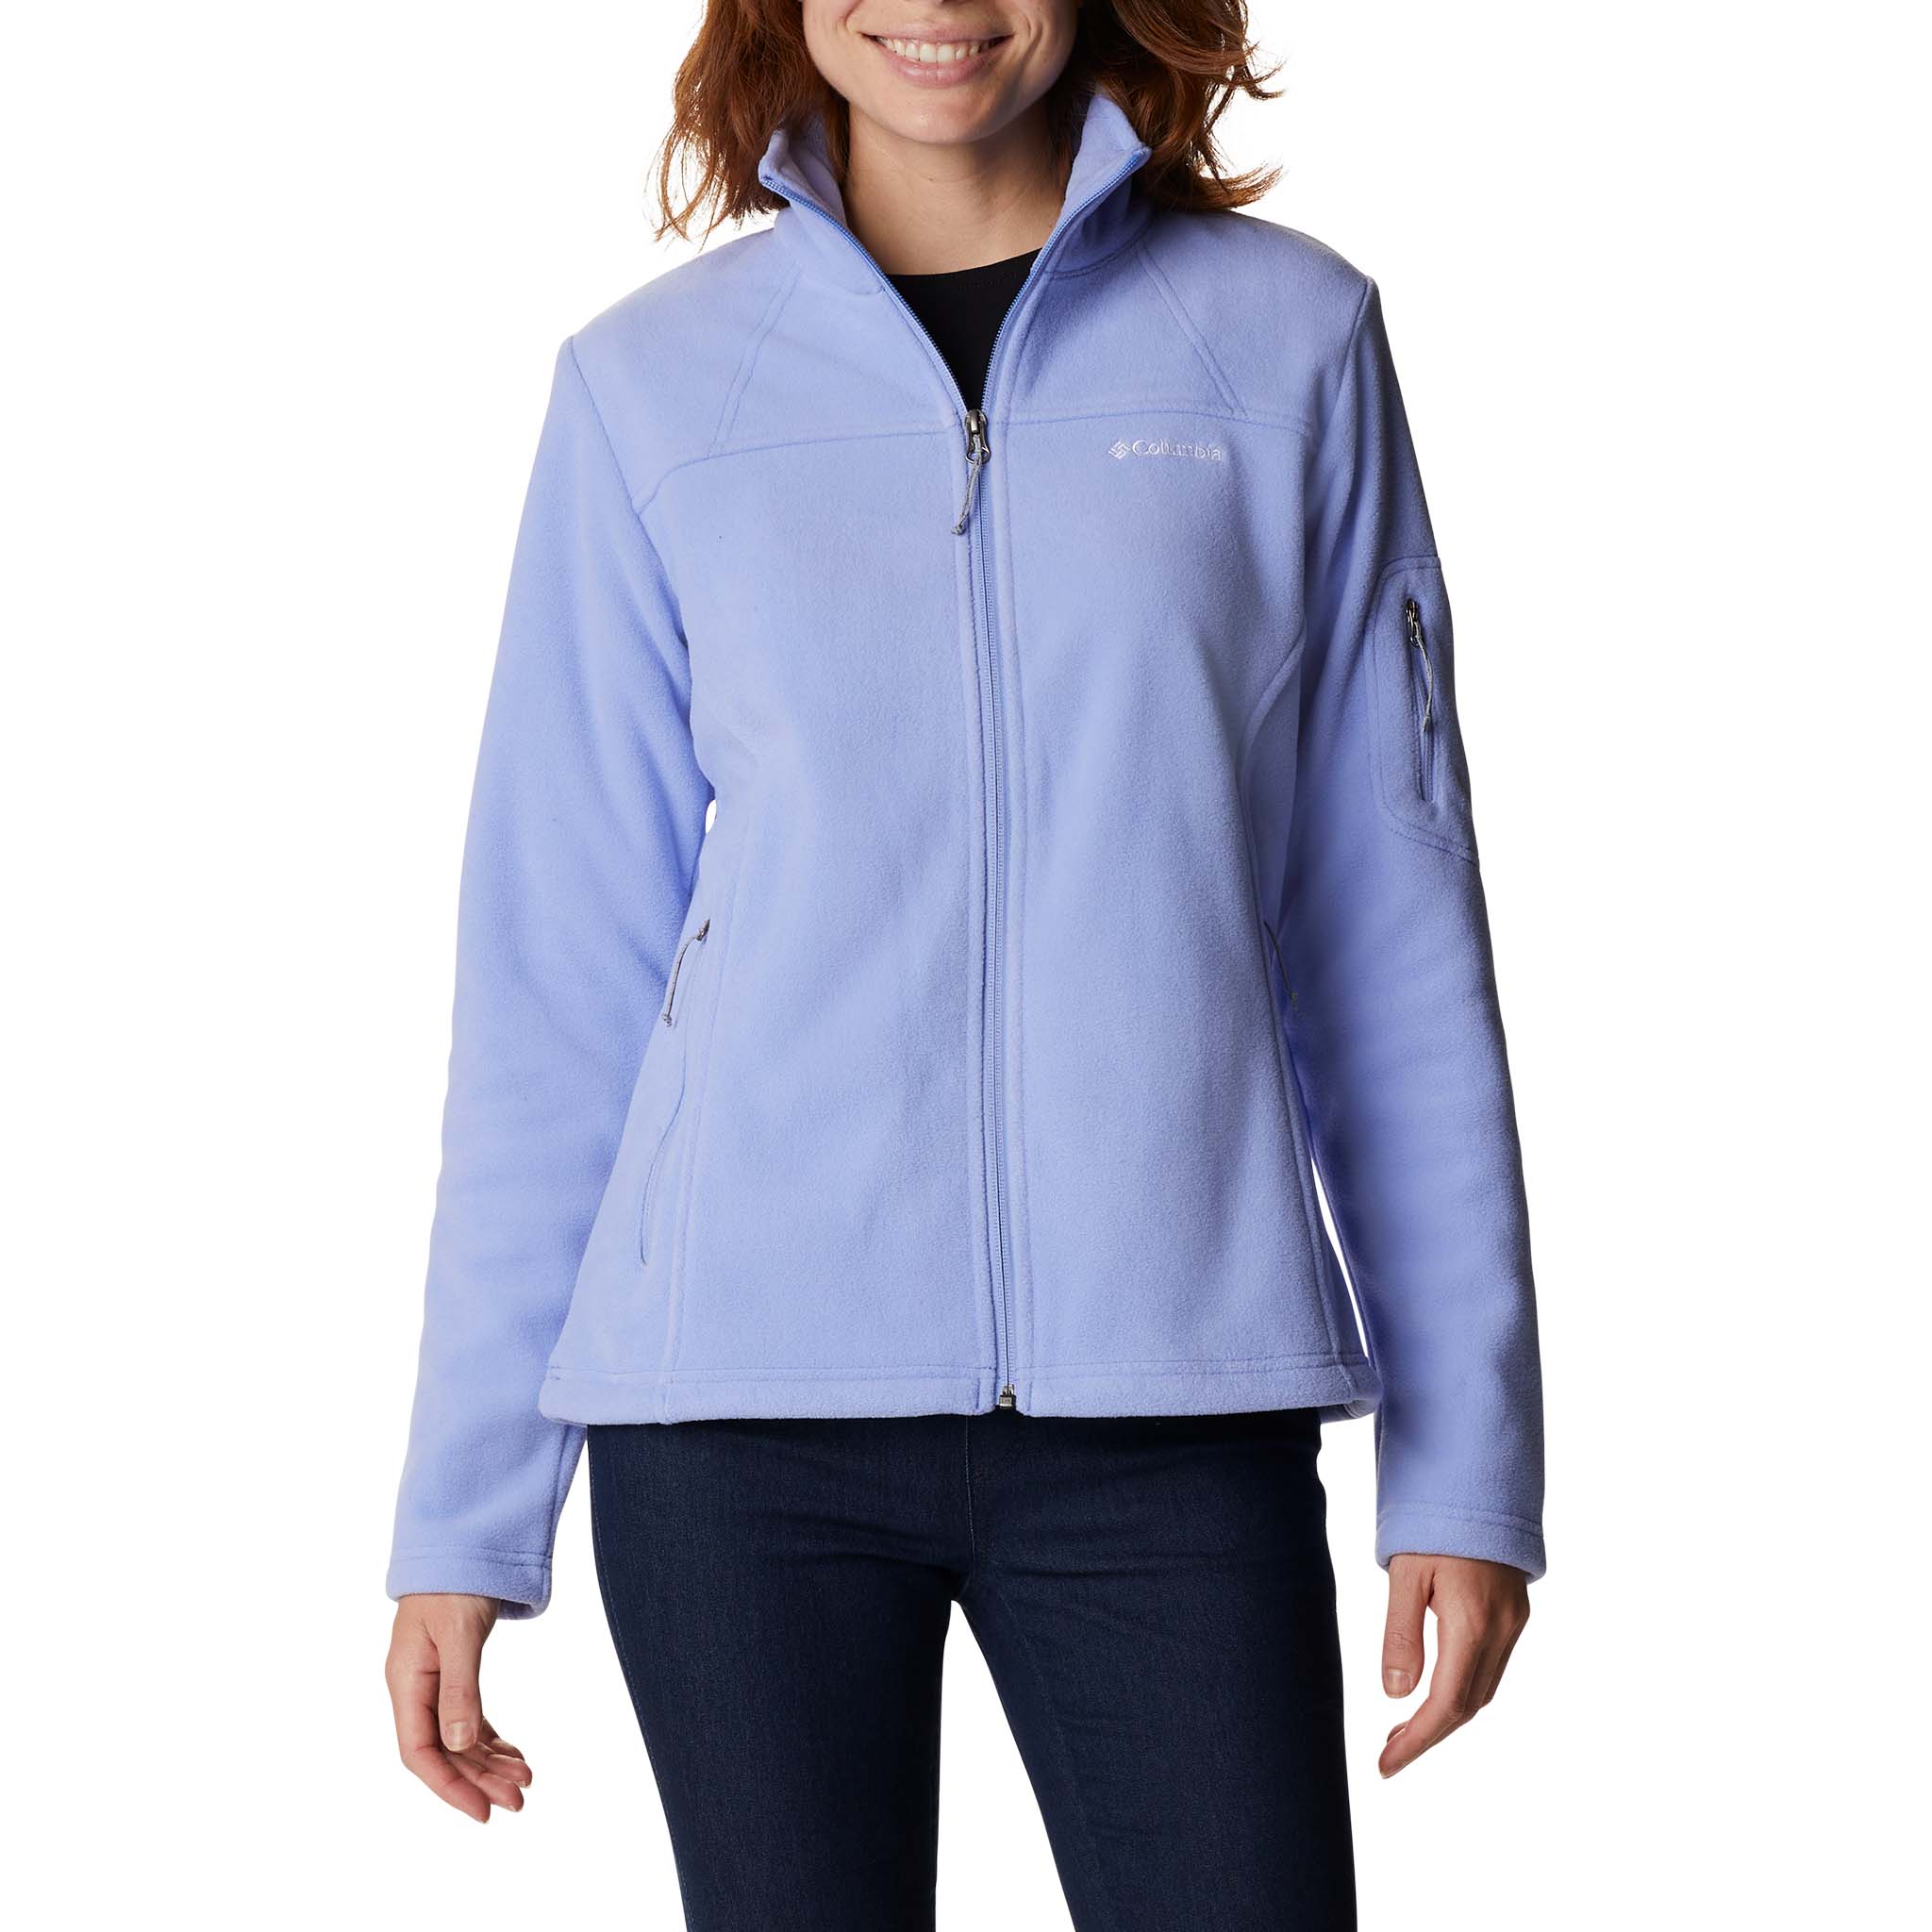 Columbia Sportswear Blue Two Tone Windbreaker Full Zip Jacket Womens Size L  -  Canada